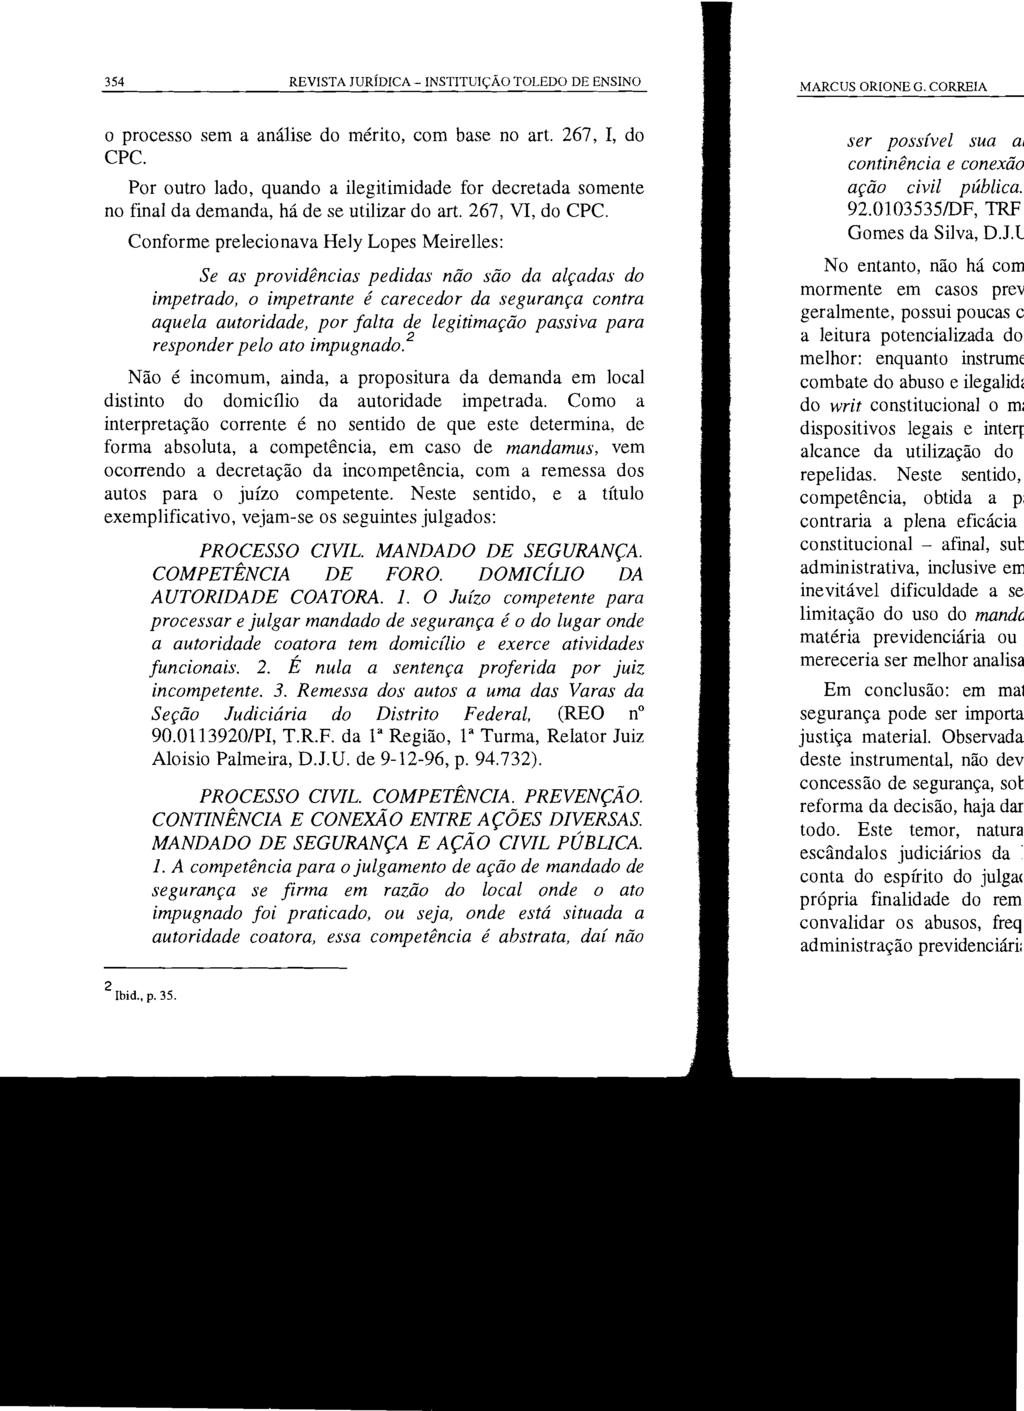 354 REVISTA JURÍDICA - INSTITUIÇÃO TOLEDO DE ENSINO o processo sem a análise do mérito, com base no art. 267, I, do CPC.